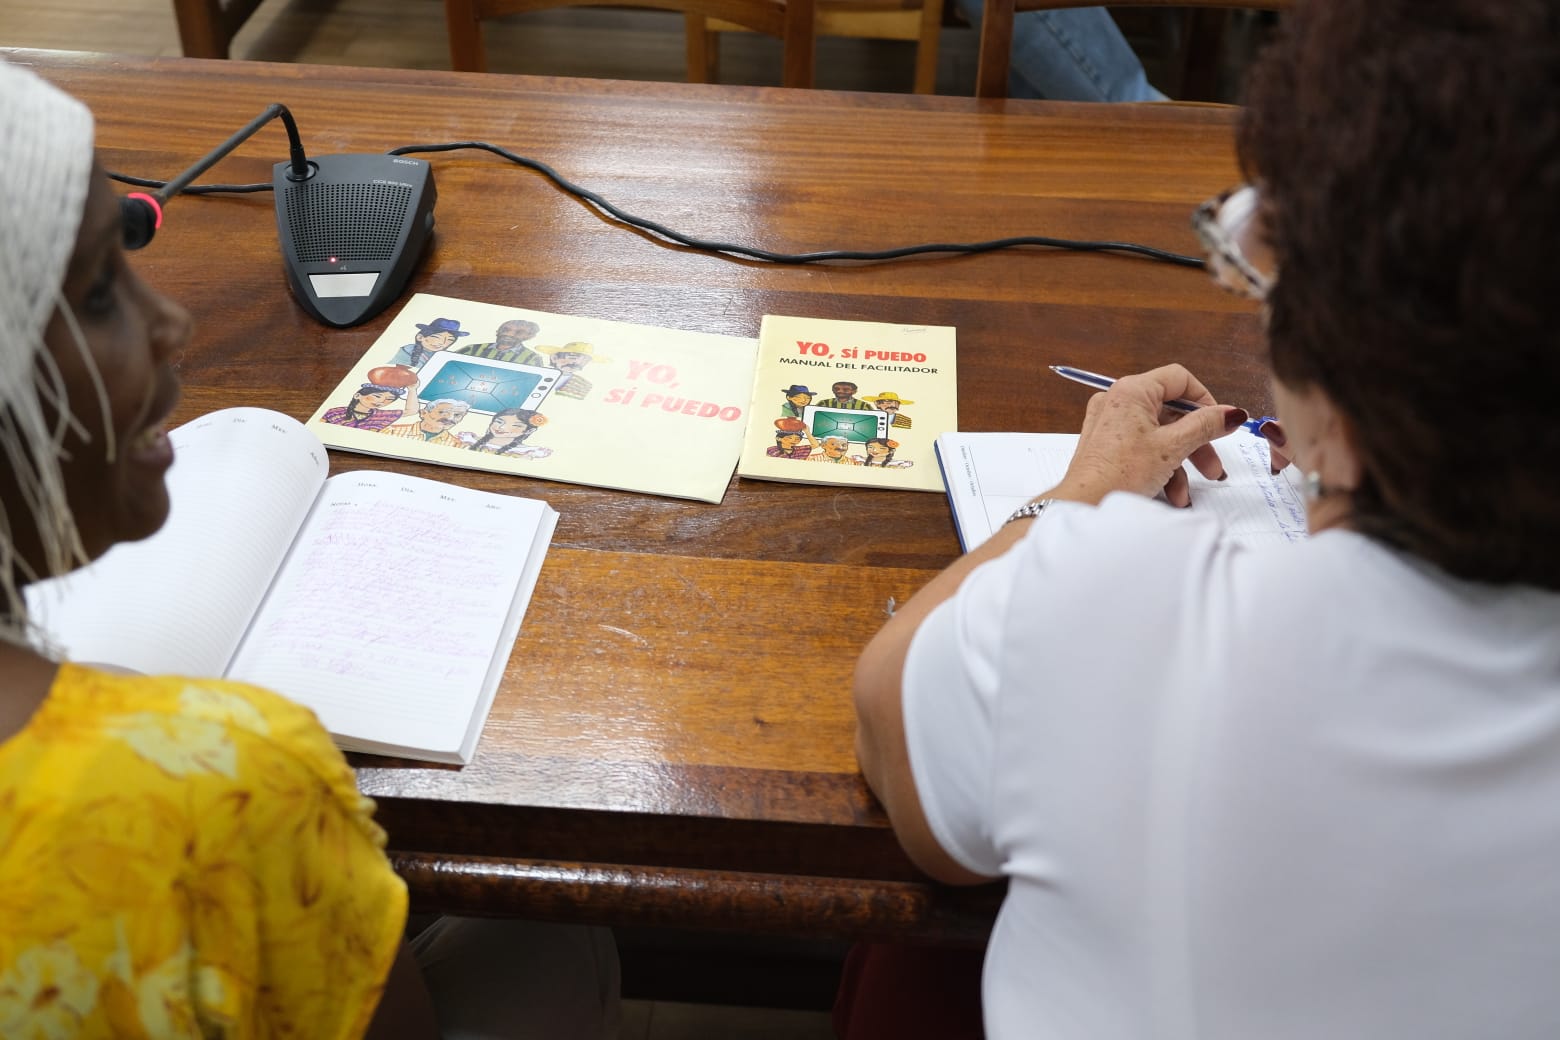 Deux formatrices originaires de Cuba se trouvent actuellement à Saint-Paul. Ces deux expertes participent à la première phase de la mise en œuvre de l’expérimentation de la méthode d’alphabétisation « Yo si puedo » sur le territoire.